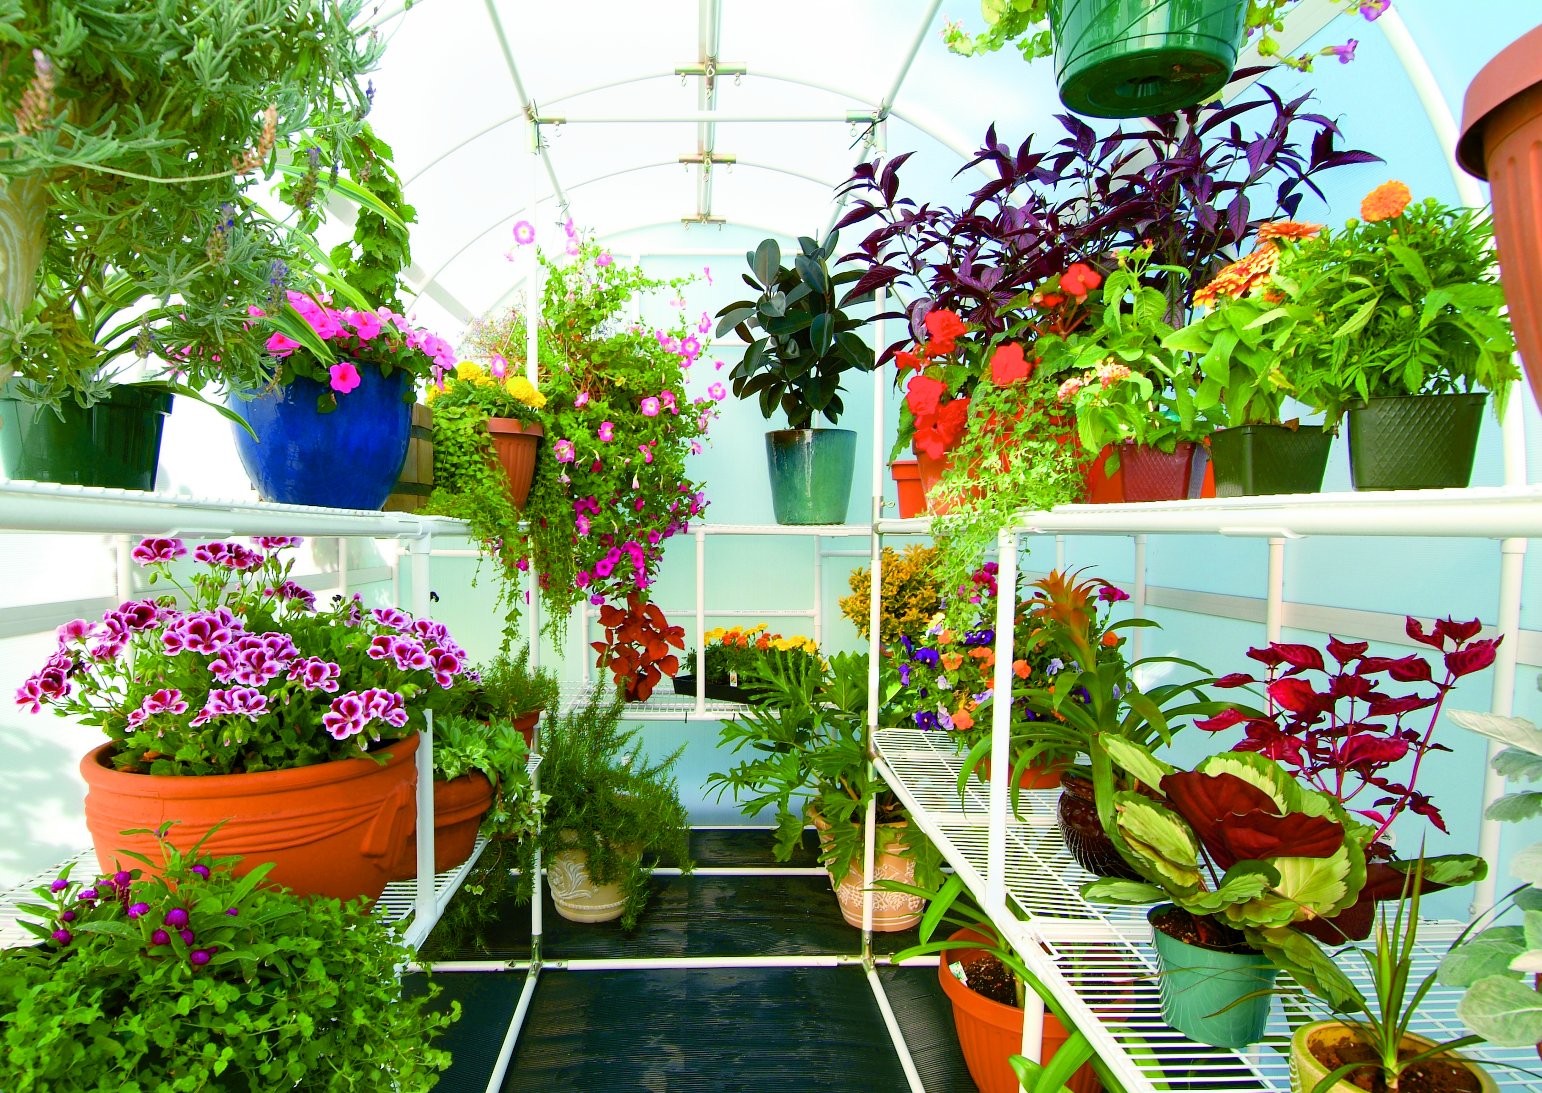 Gardener's Oasis™ 8x8x8.ft Heat Efficient Greenhouse - Dive To Garden